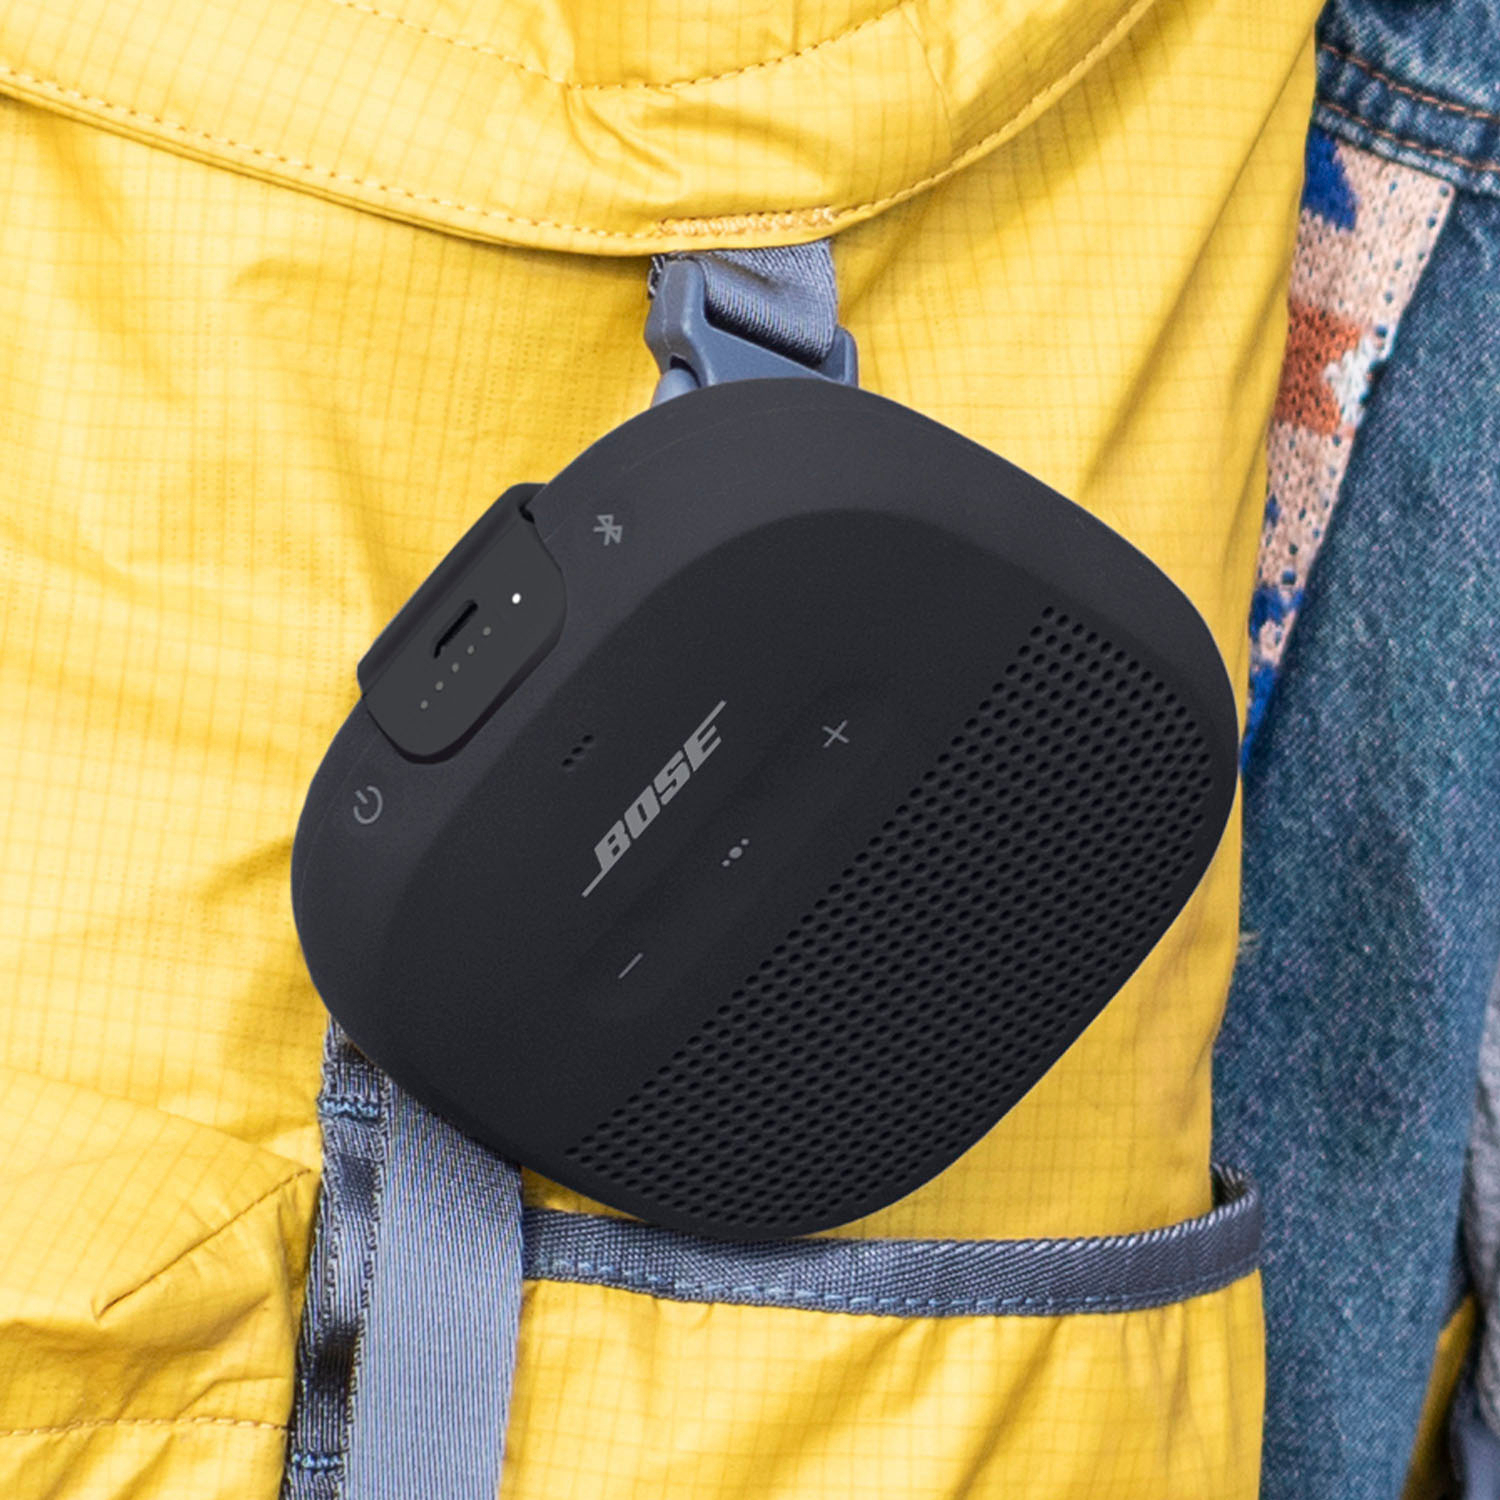 Bose SoundLink Micro Portable Bluetooth Speaker with Waterproof Design Black  783342-0100 - Best Buy